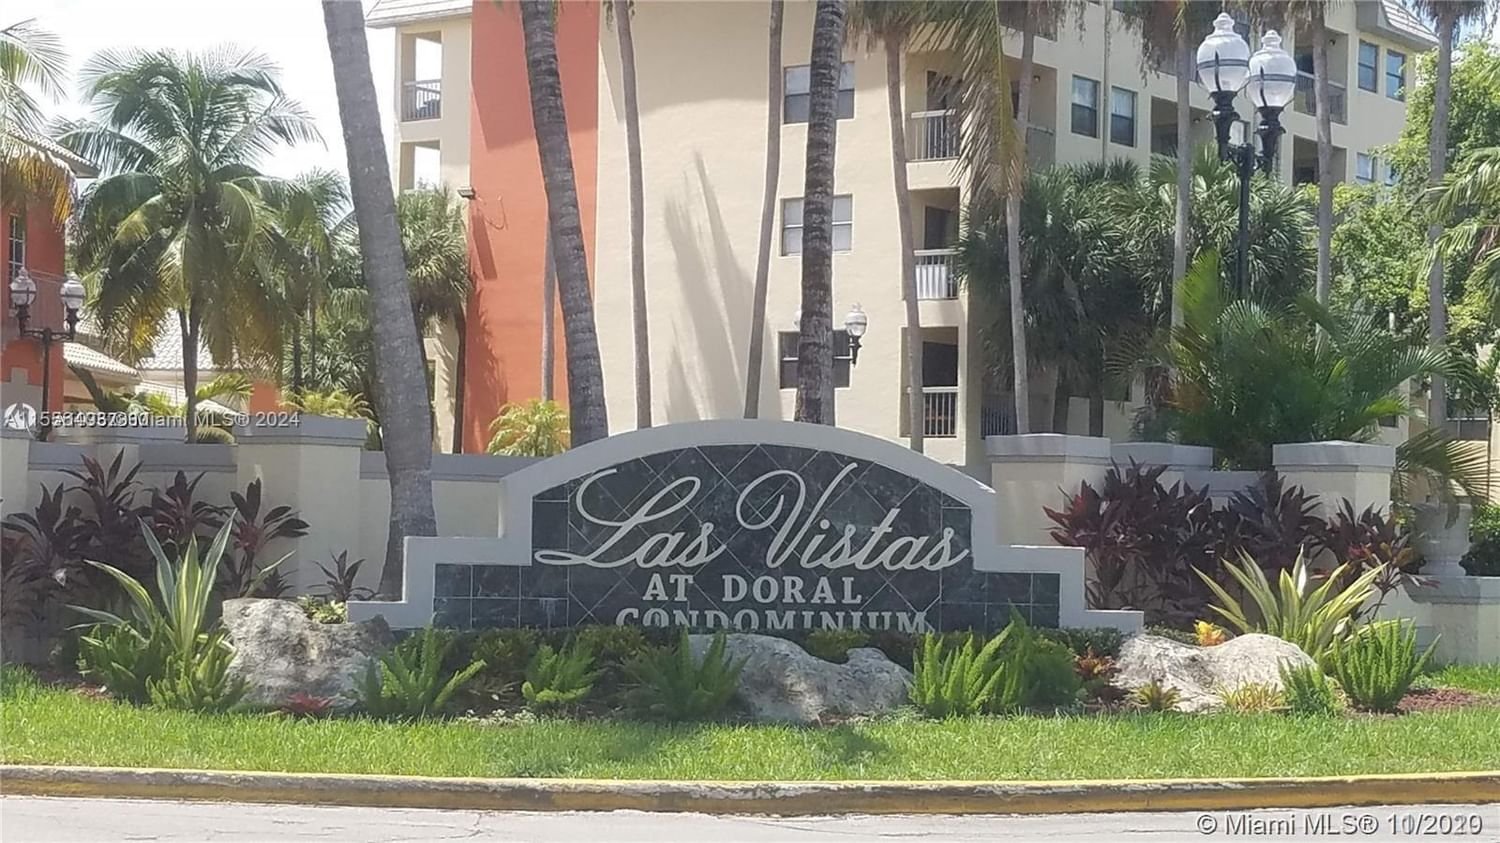 Real estate property located at 8255 Lake Dr #504, Miami-Dade County, LAS VISTAS AT DORAL CONDO, Doral, FL